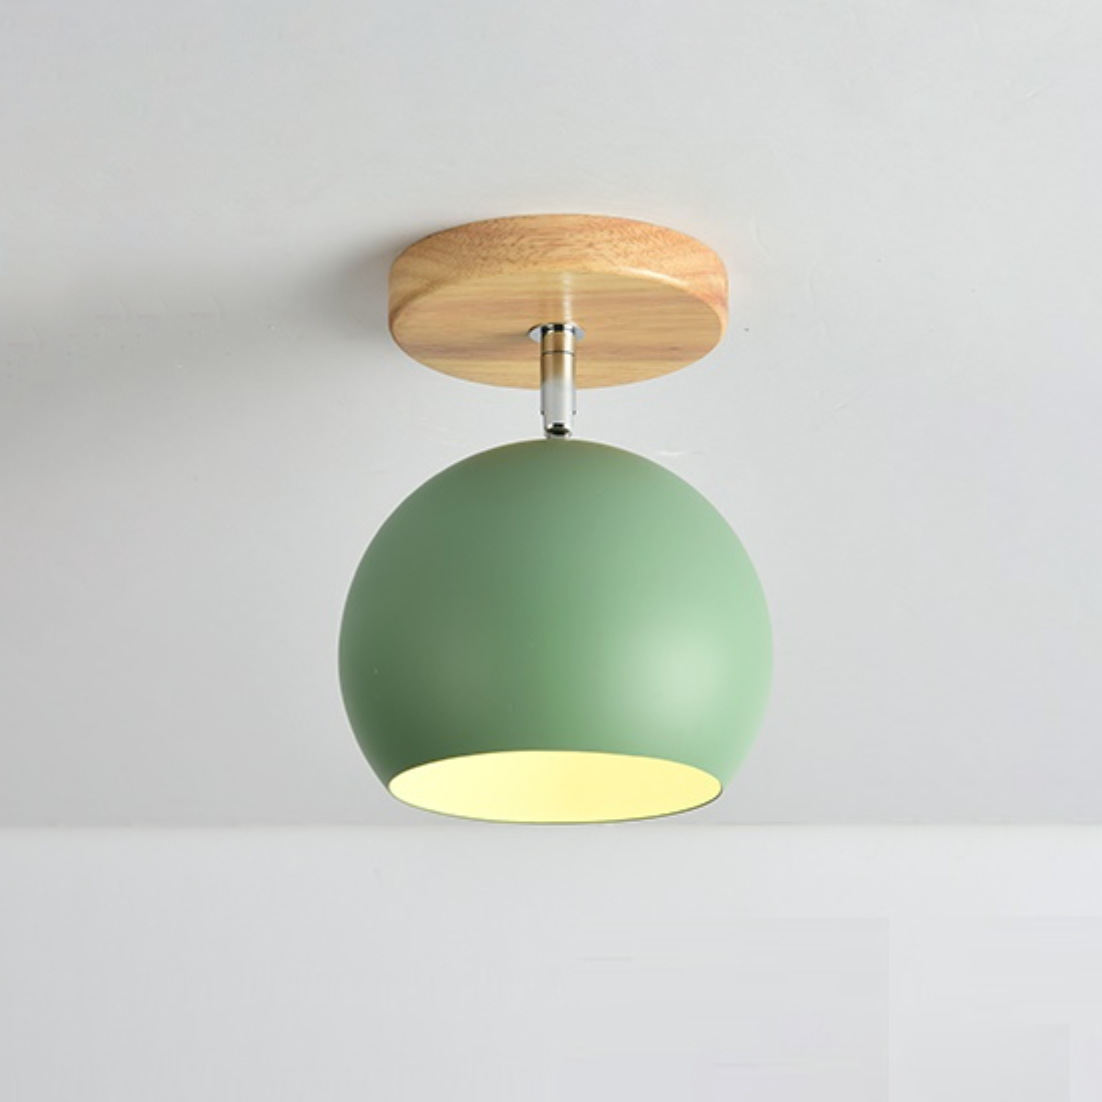 Aplique LED em madeira e bola de metal colorida ajustável